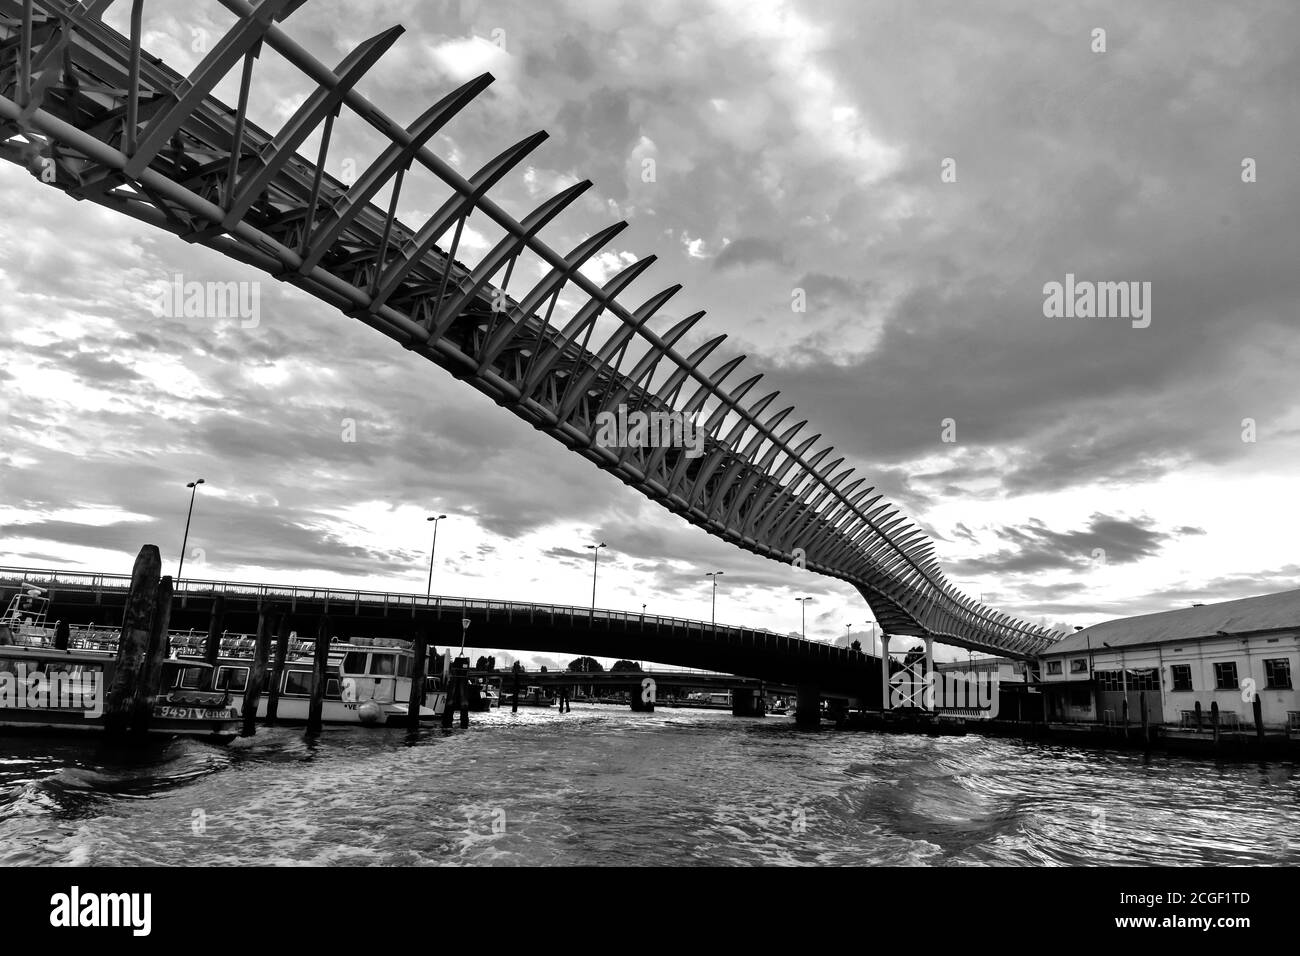 The Ponte della Costituzione is  bridge over the Grand Canal in Venice, designed by Santiago Calatrava, Italy Stock Photo